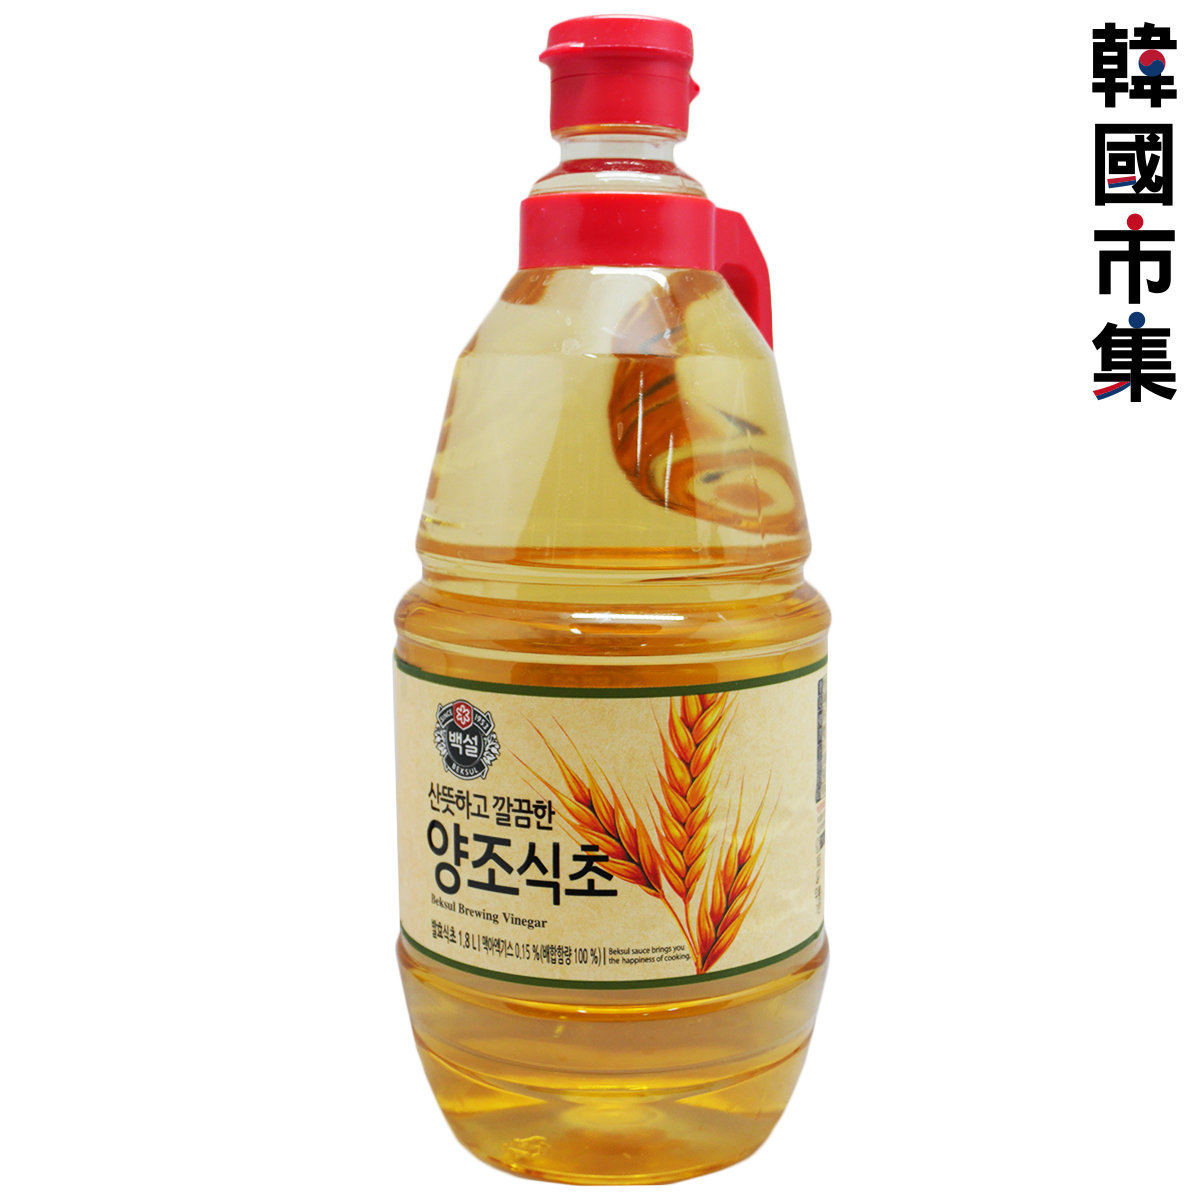 韓版CJ Beksul 健康醋 釀造醋  1.8L【市集世界 - 韓國市集】(平行進口)